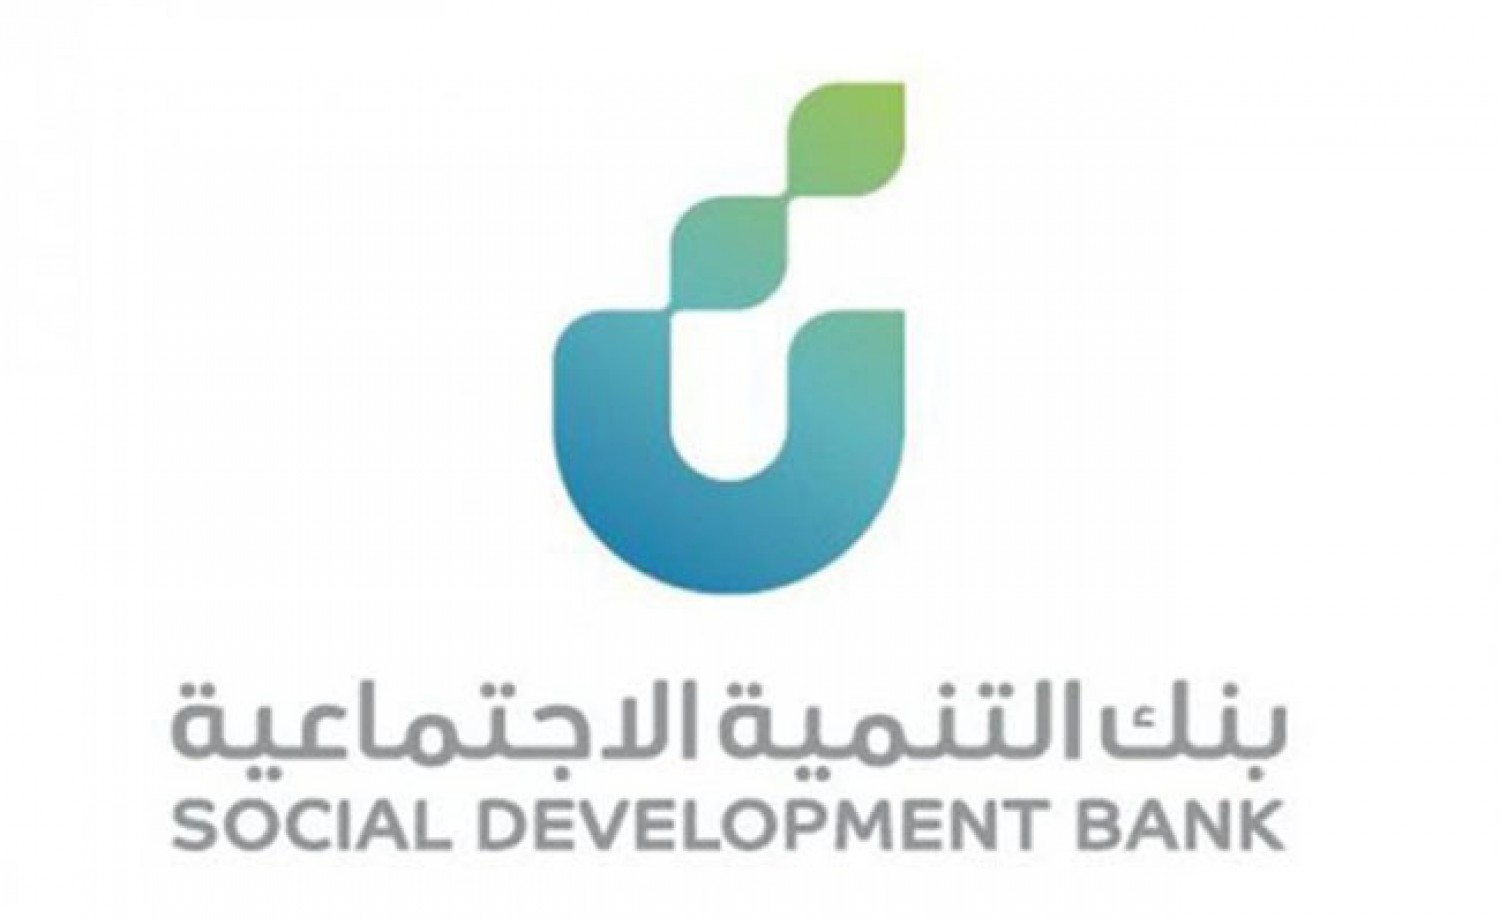 بنك التنمية الاجتماعية يحدد مميزات وشروط الحوافز النقدية من منتج زود